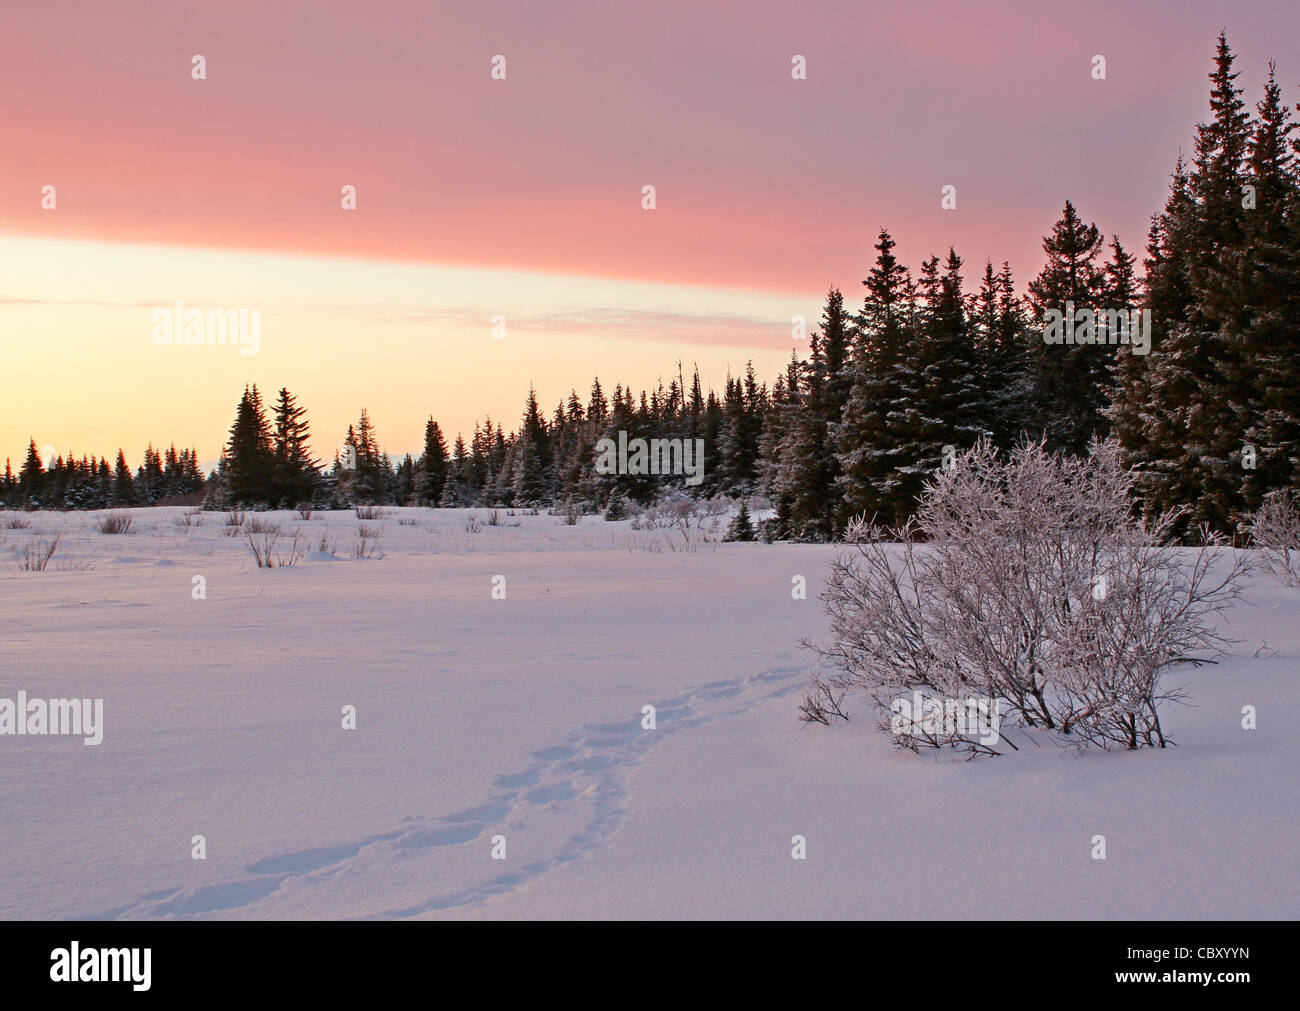 Pistes pour raquettes lynx suivant les voies dans la neige dans la lueur rose du coucher du soleil au bord d'une forêt d'épinettes d'Alaska. Banque D'Images